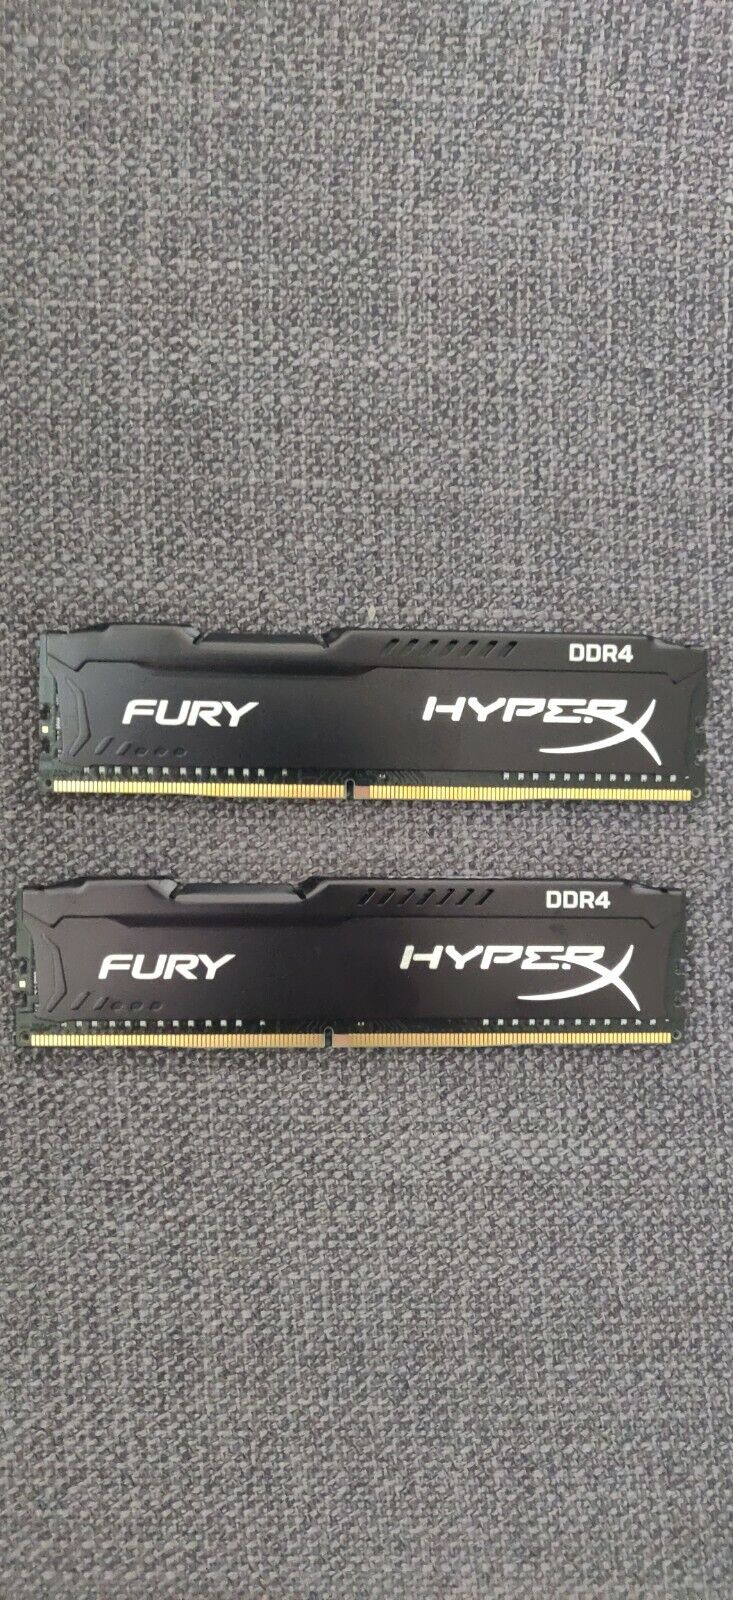 HyperX Fury 16GB (2 x 8GB) (DDR4-2933mhz) ram memory